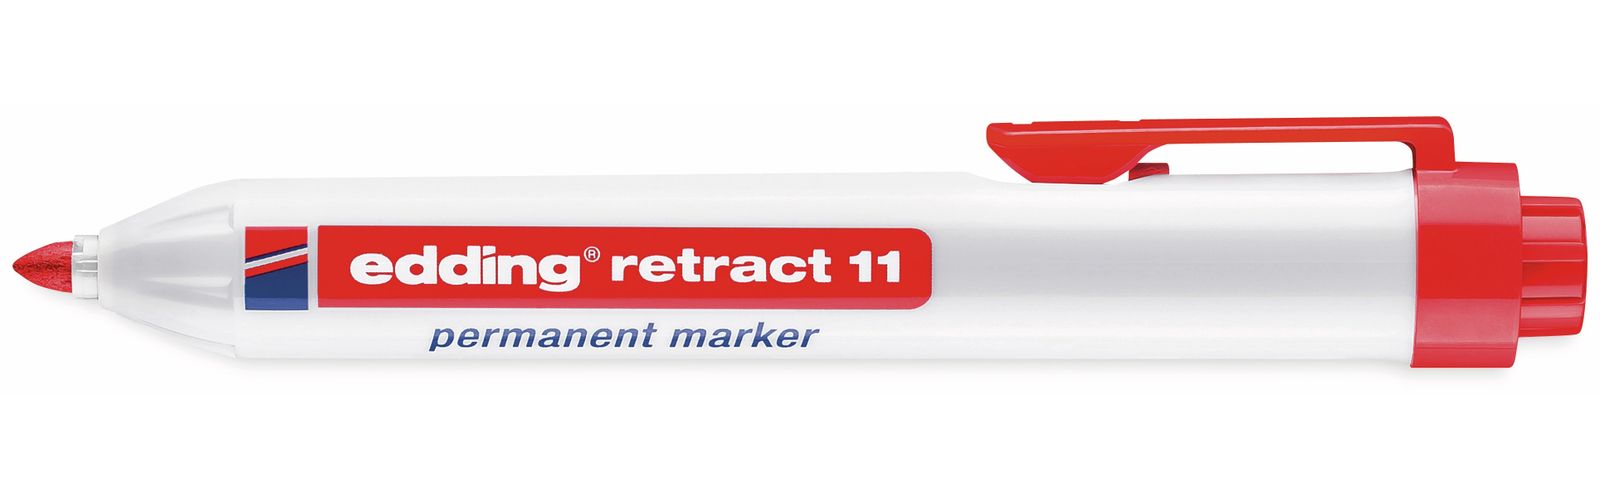 EDDING Permanent-Marker e-11 retract, rot von Edding